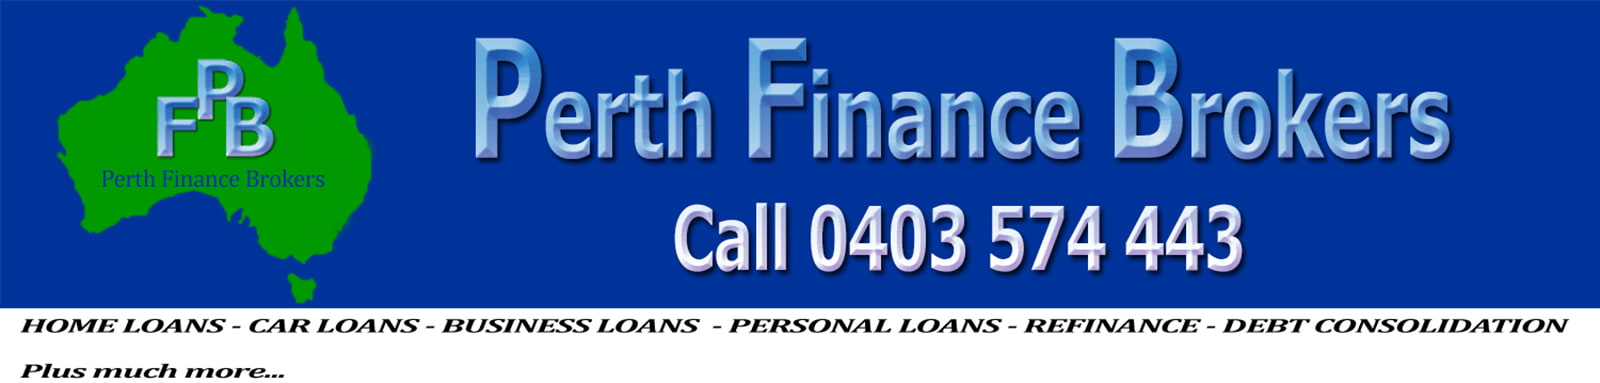 Personal LoansPersonal Loan Broker